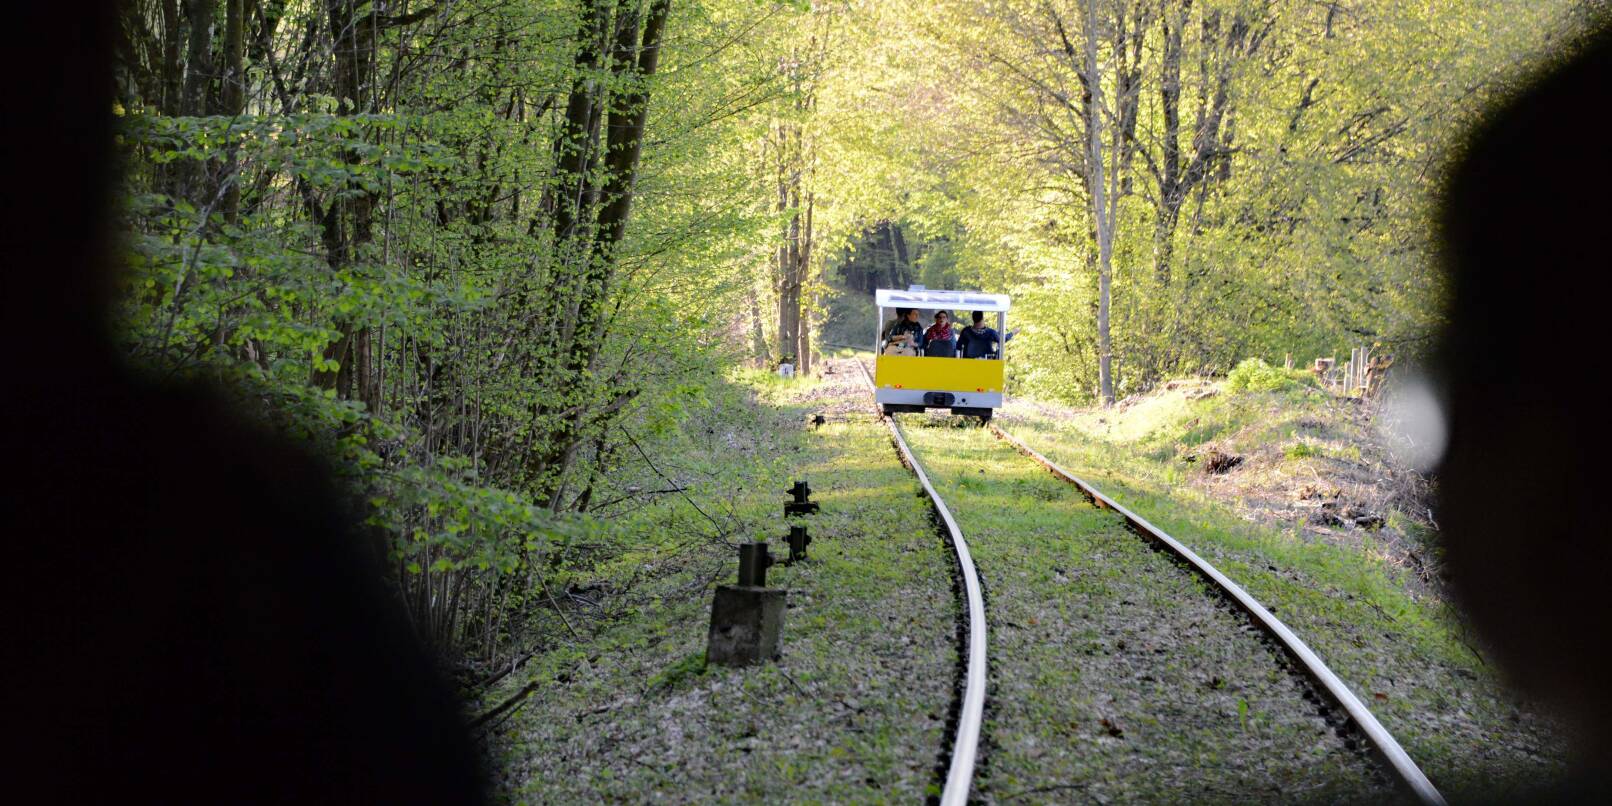 Auch bei Regen schön: Mit der Solardraisine über eine der schönsten denkmalgeschützen Eisenbahnstrecken Europas zwischen Mörlenbach und Wald-Michelbach.